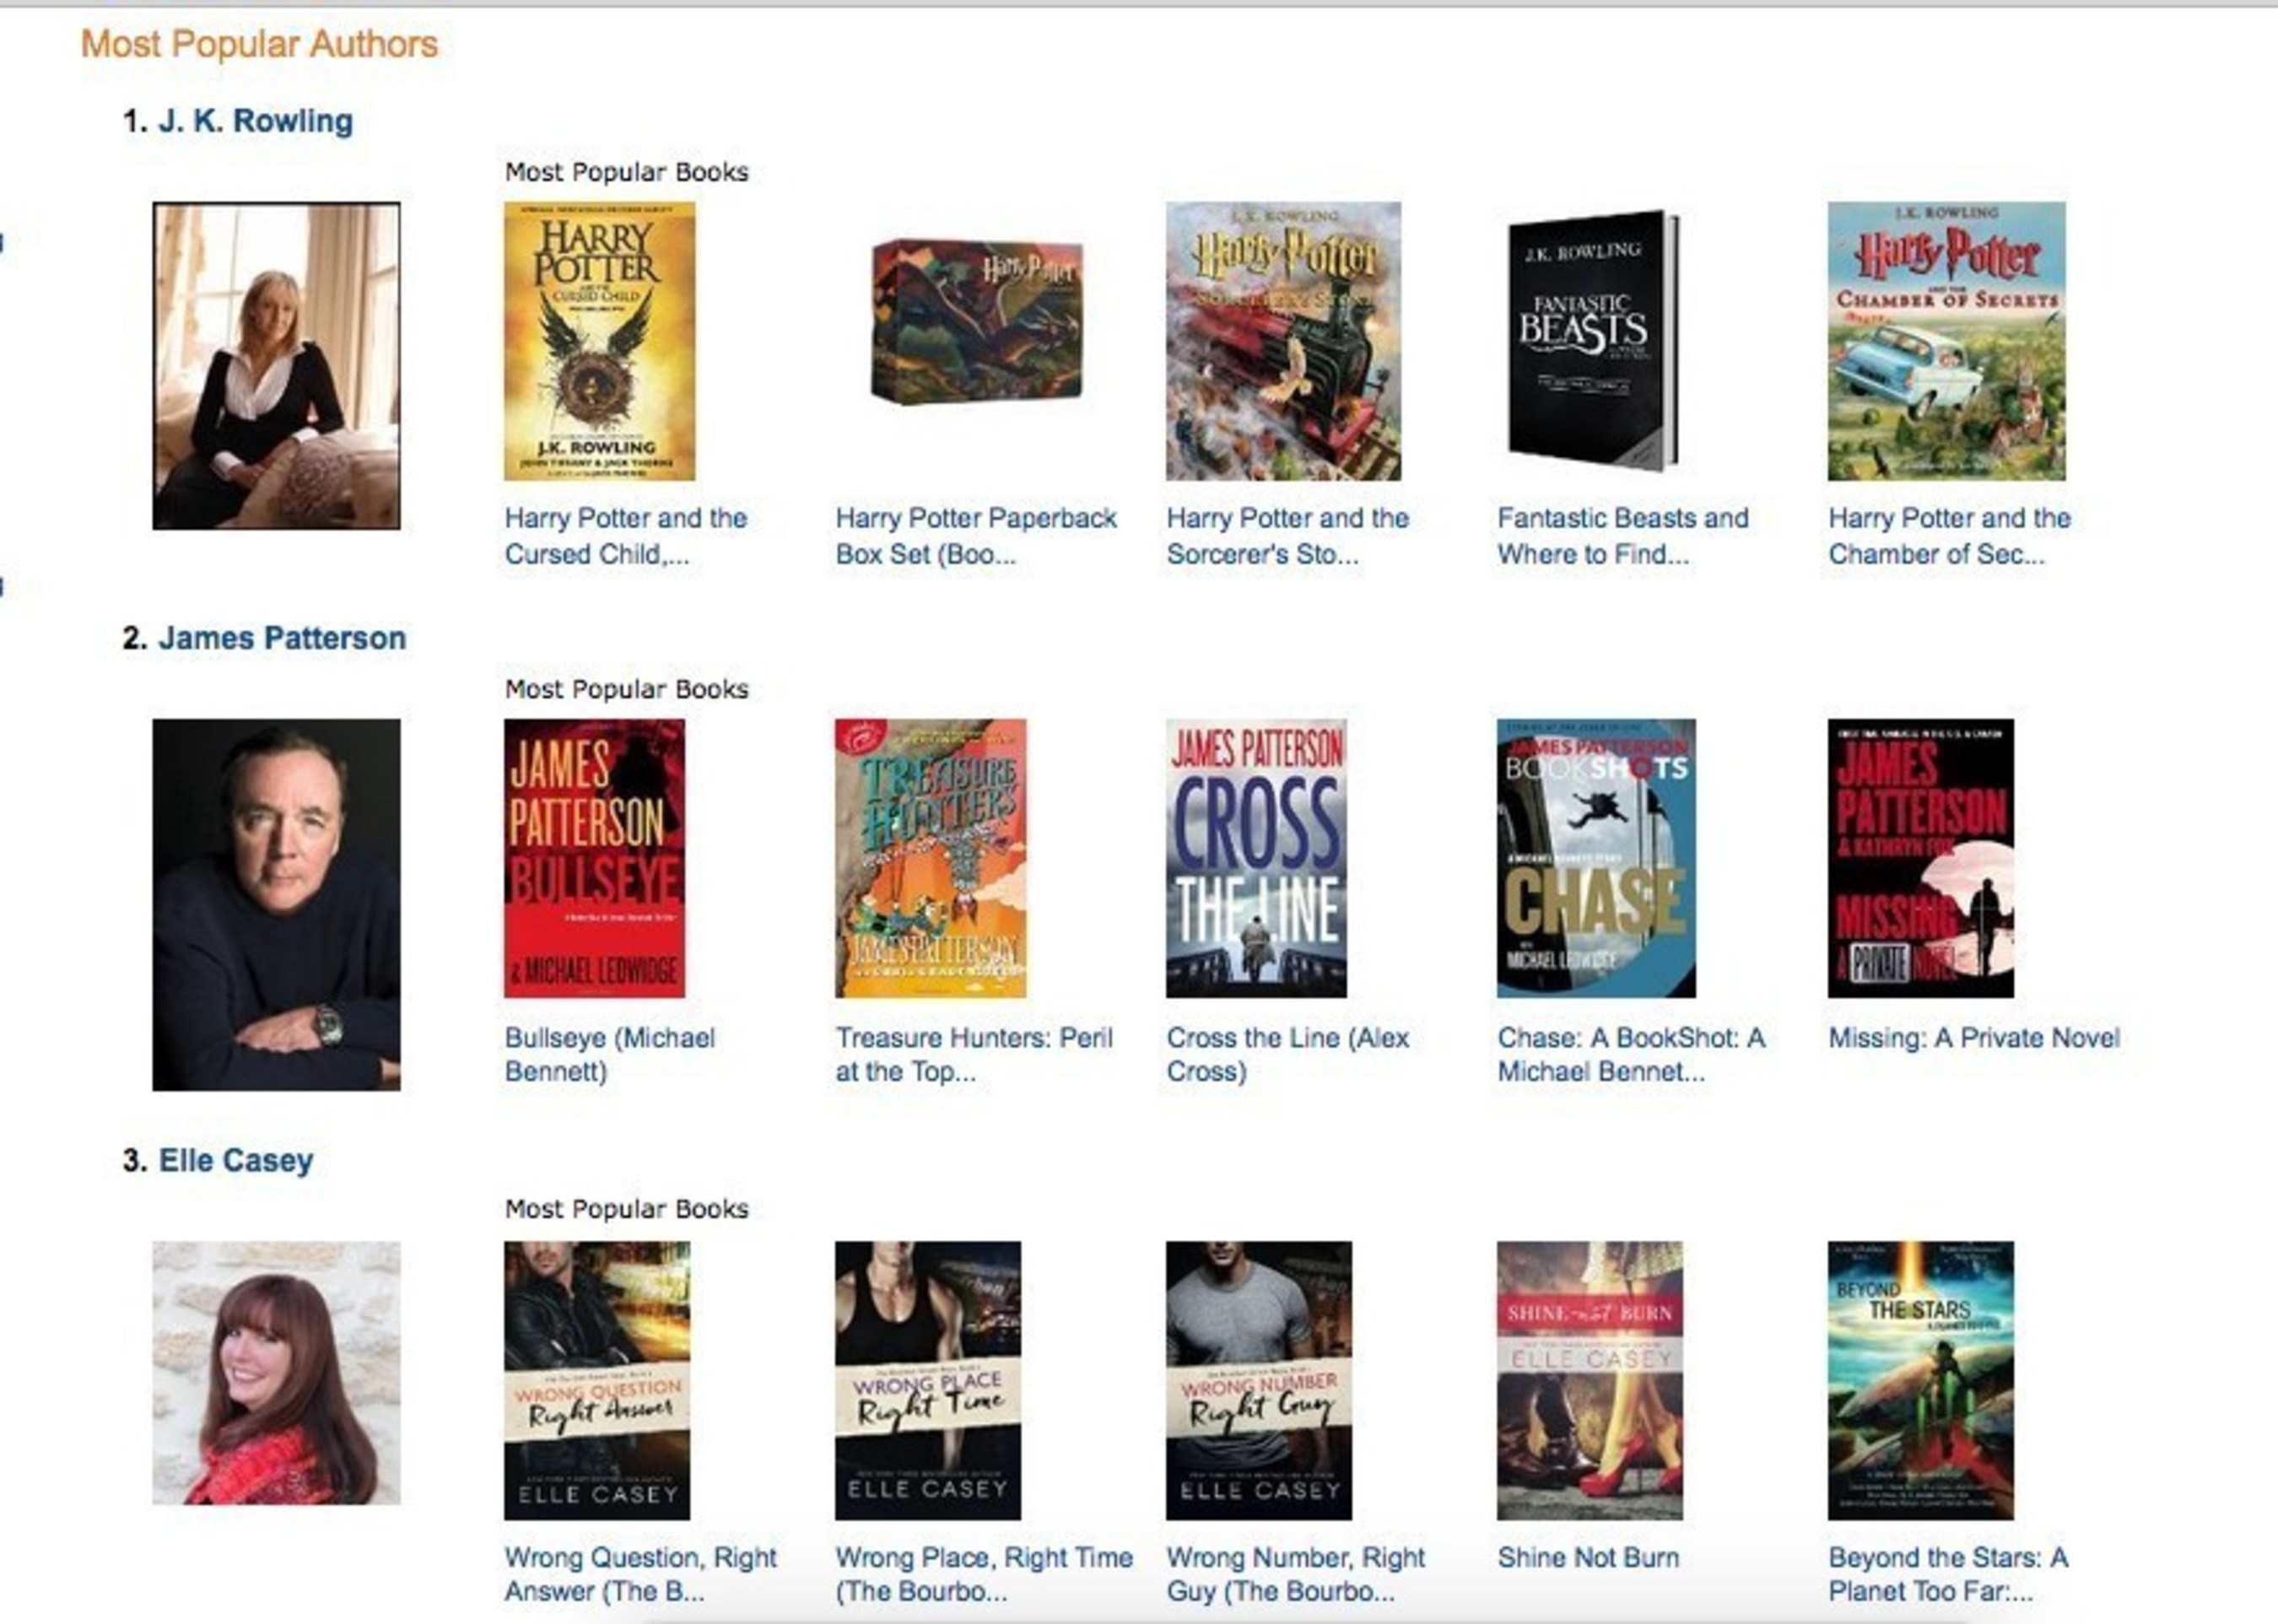 Top 3 Authors on Amazon